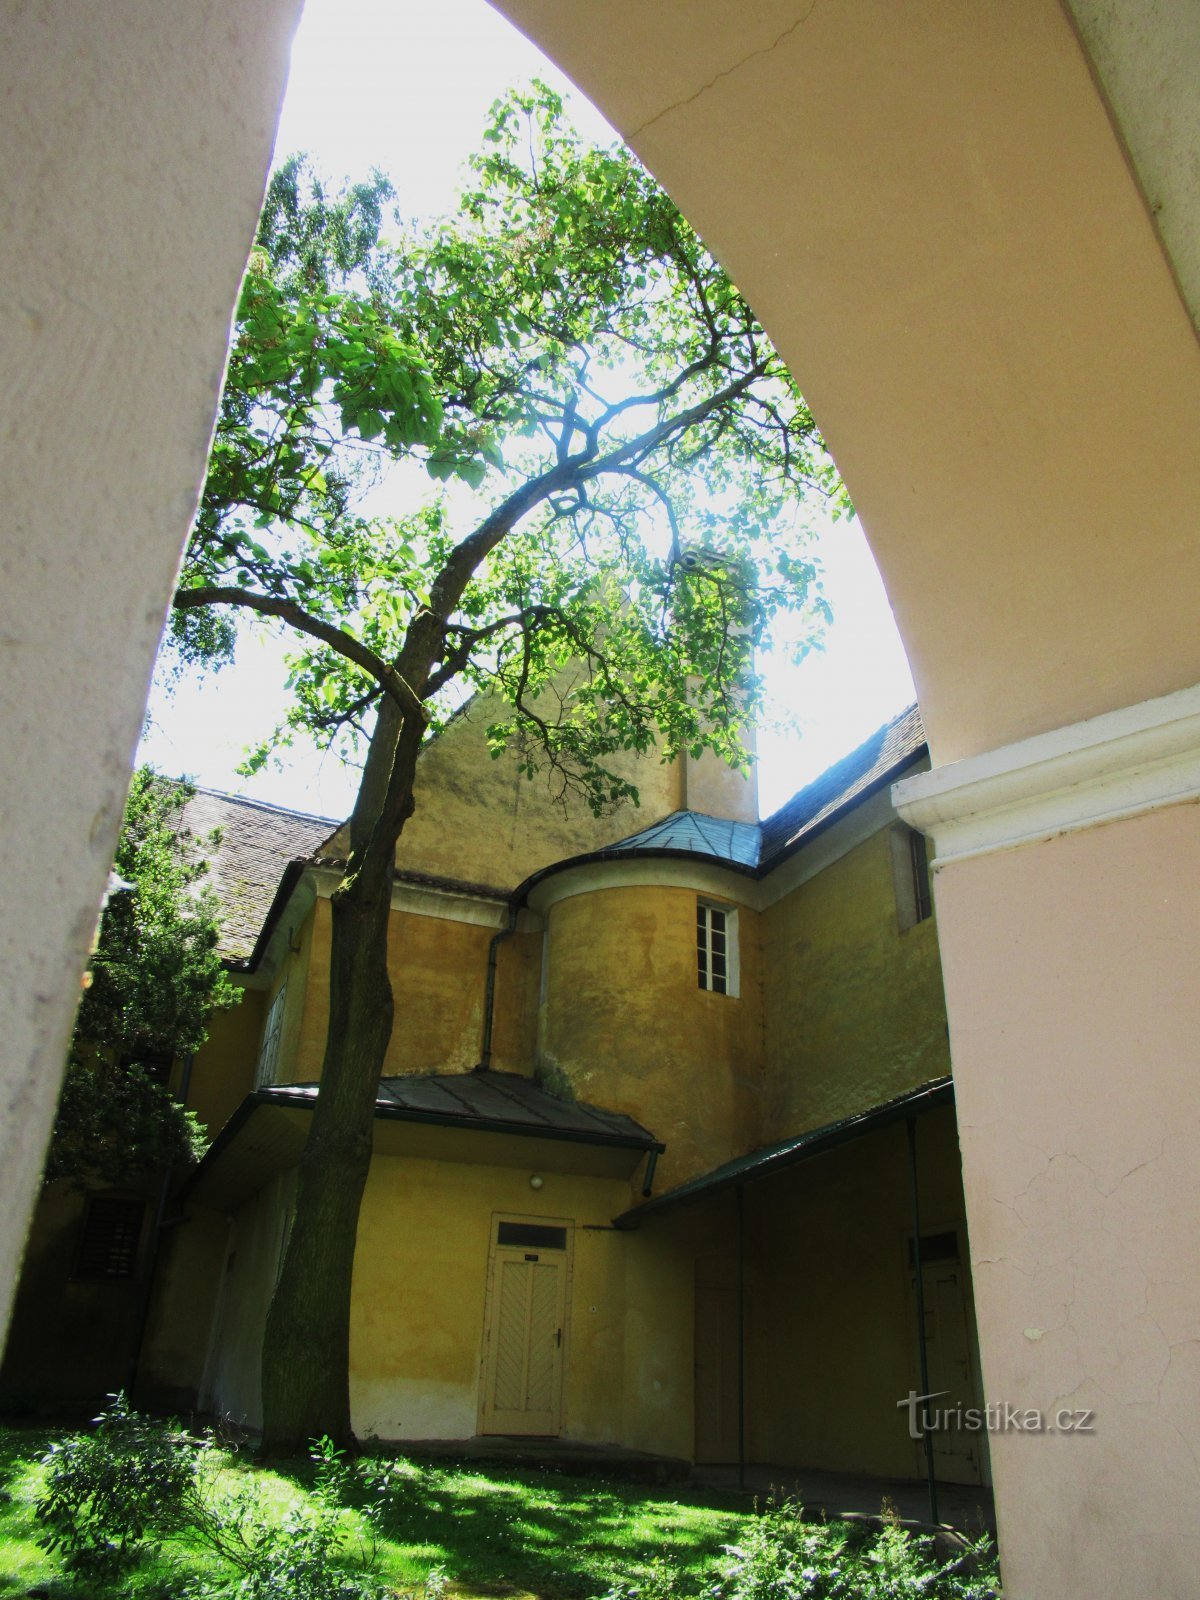 Casa de verano del castillo en Opočno